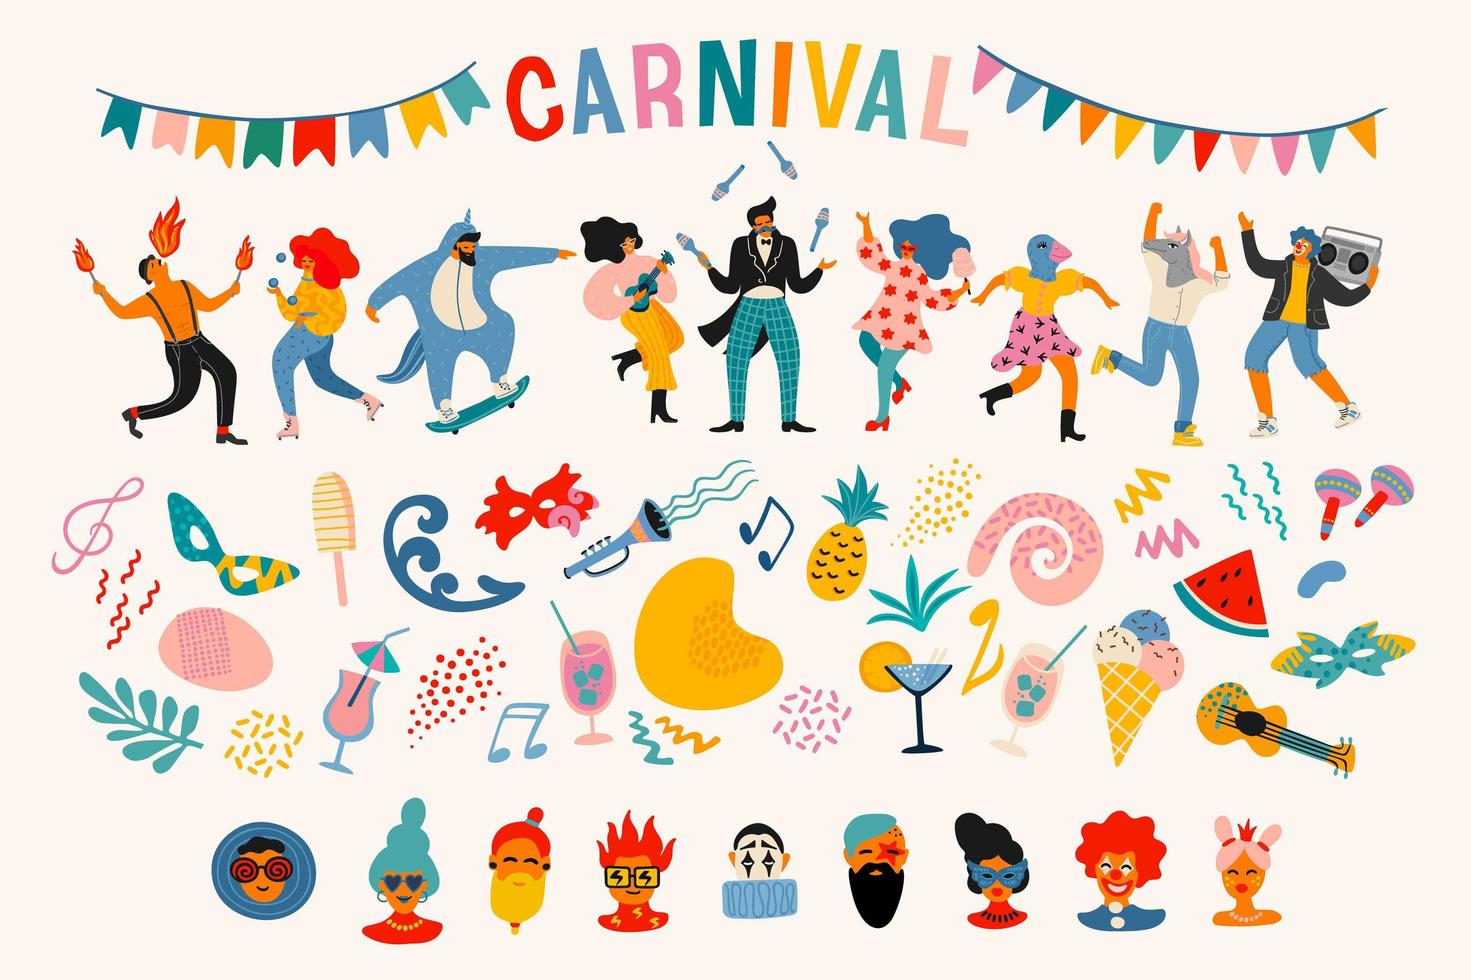 carnaval. conjunto de vectores. personas con disfraces de carnaval, rostros, máscaras, símbolos, formas abstractas vector